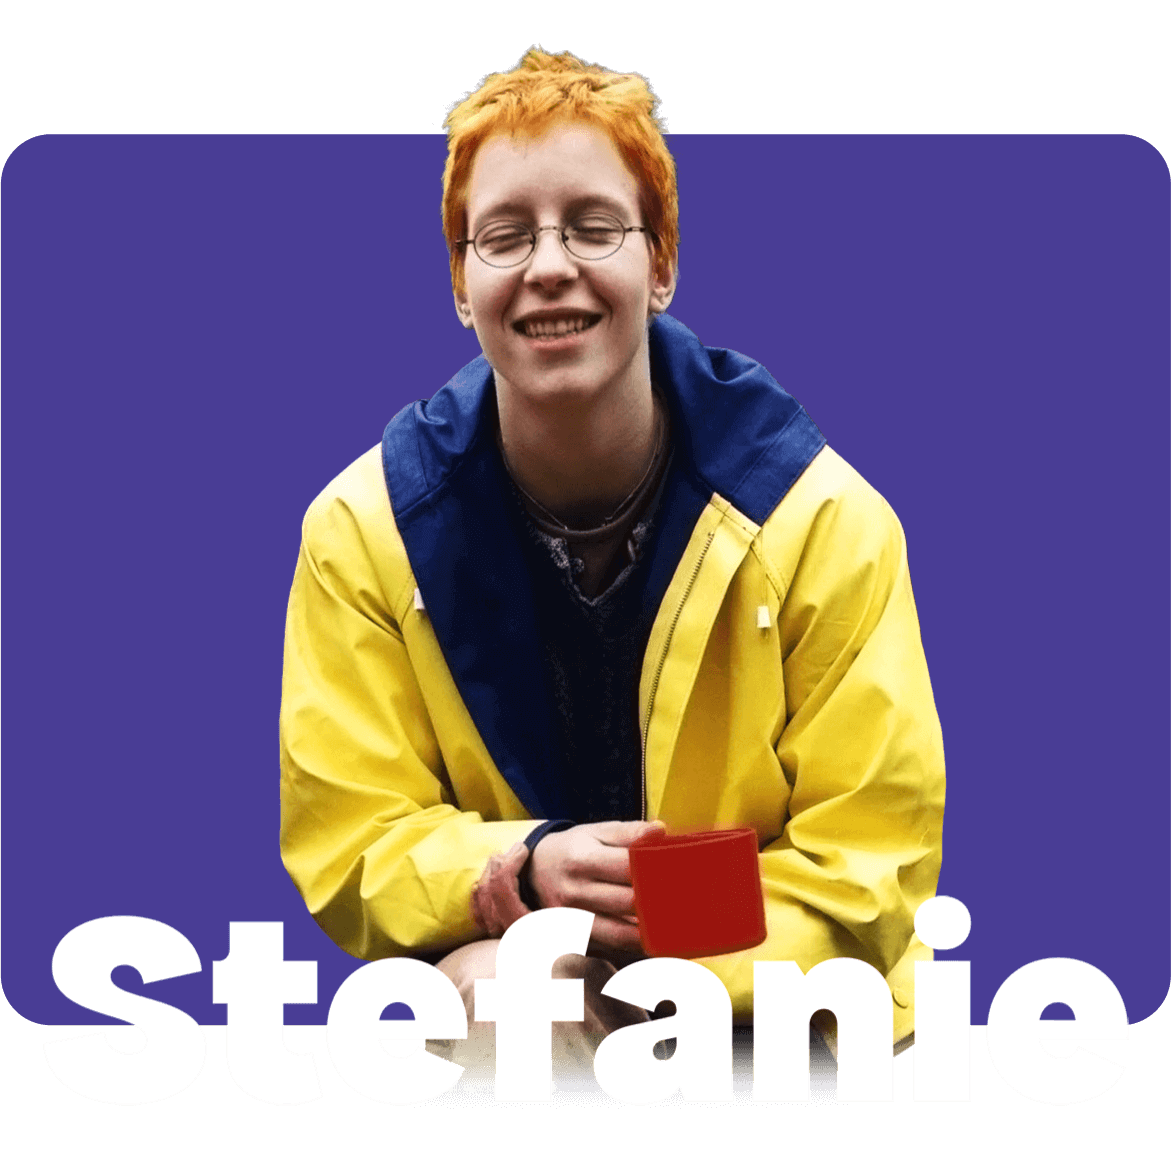 Porttrait Stefanie: lächelnde Stefanie mit ihrem ikonischen gelben Regenmantel